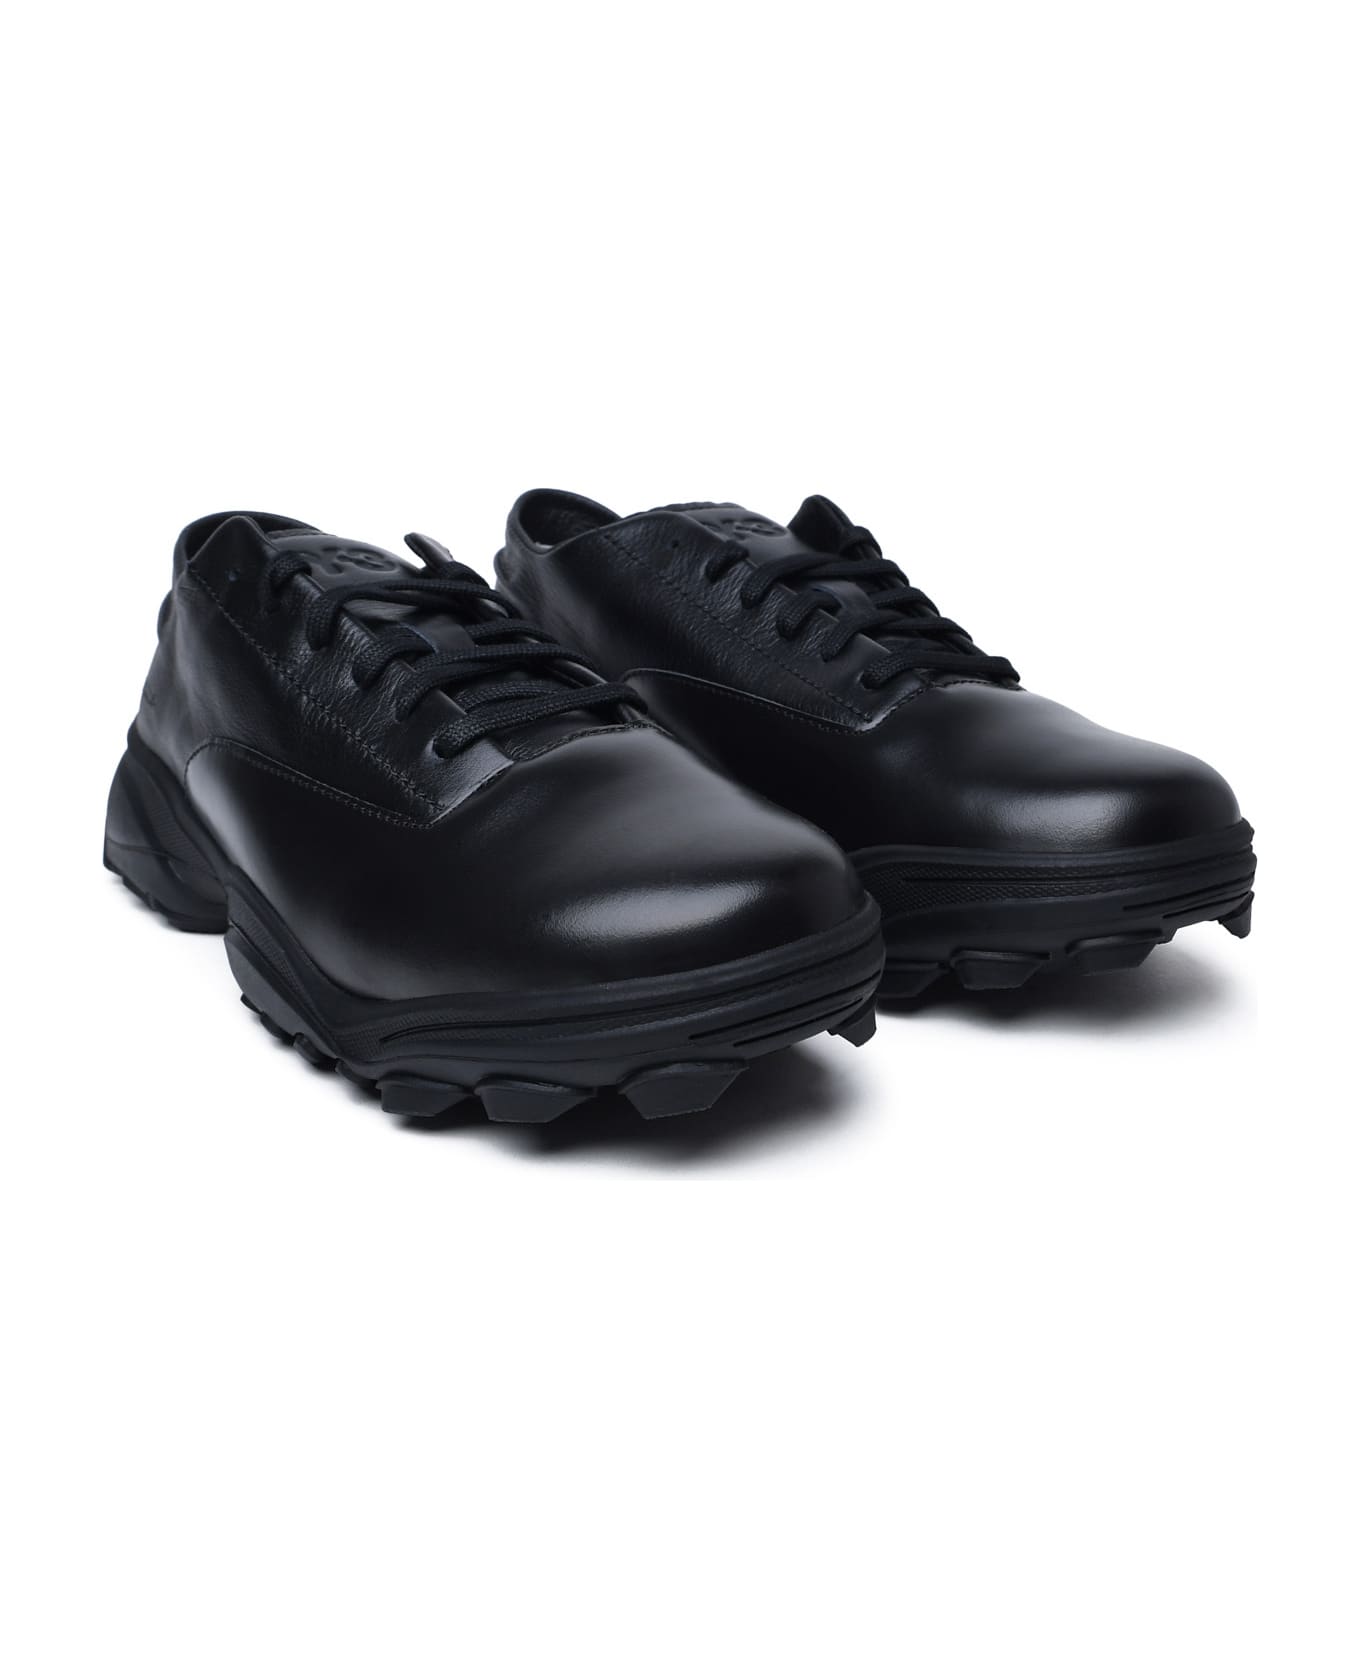 Y-3 Black Leather Sneakers - Black スニーカー